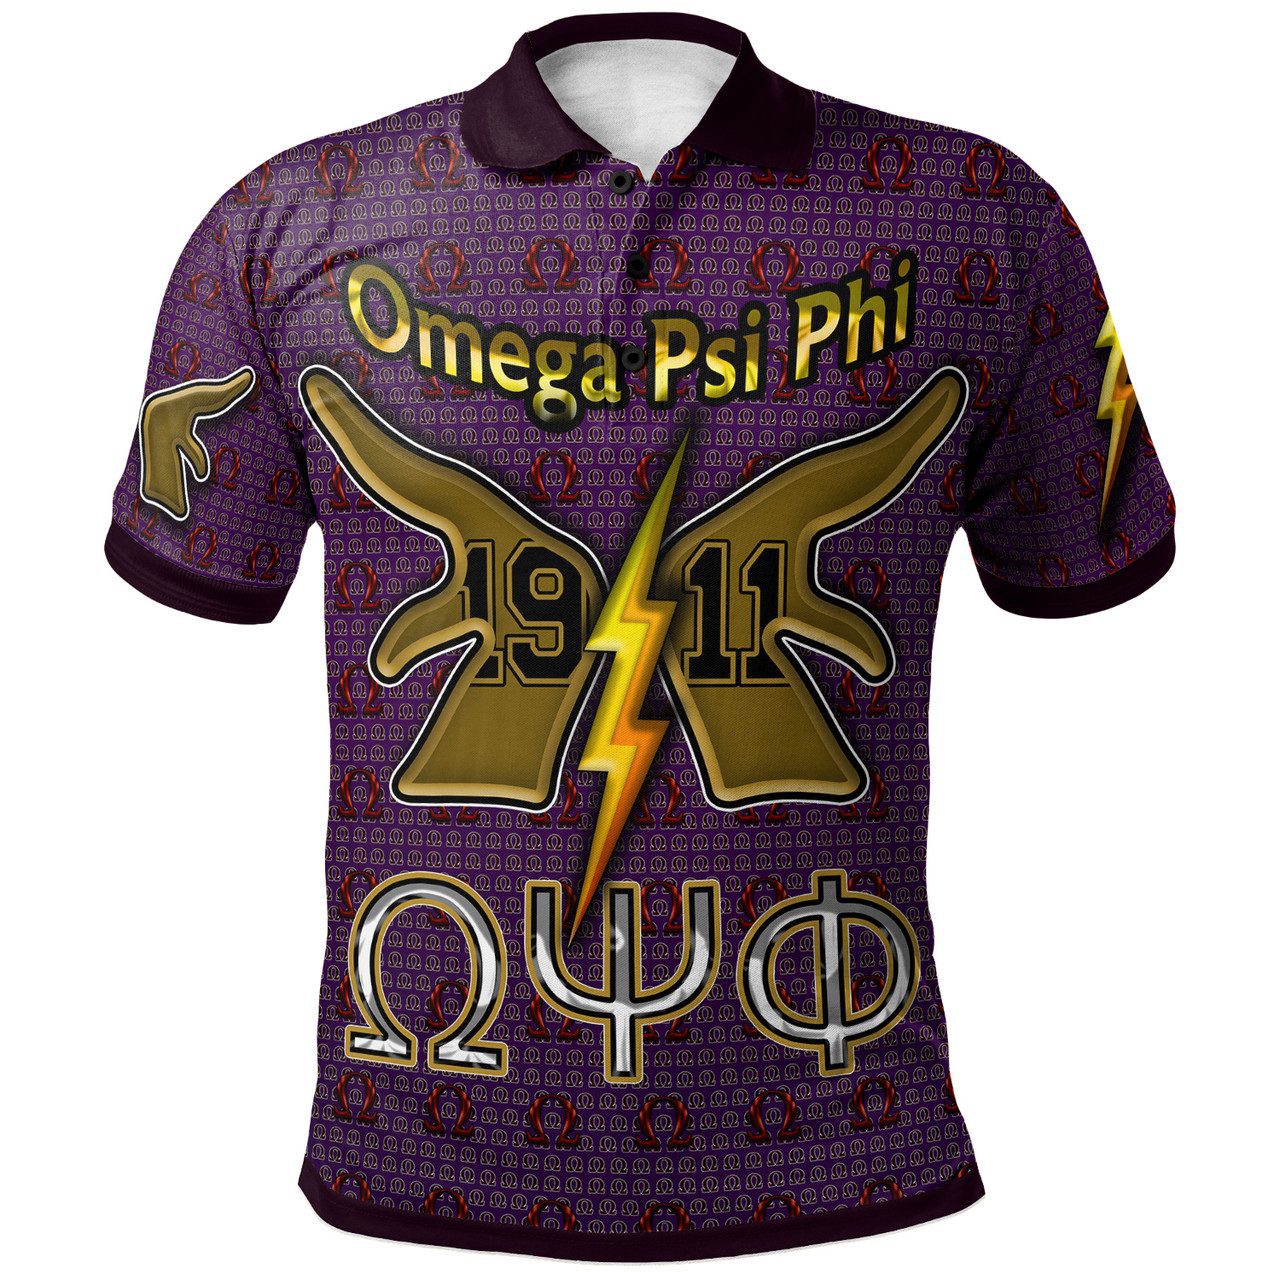 Omega Psi Phi Polo Shirt – Custom Omega Psi Phi Hand 1911 Polo Shirt